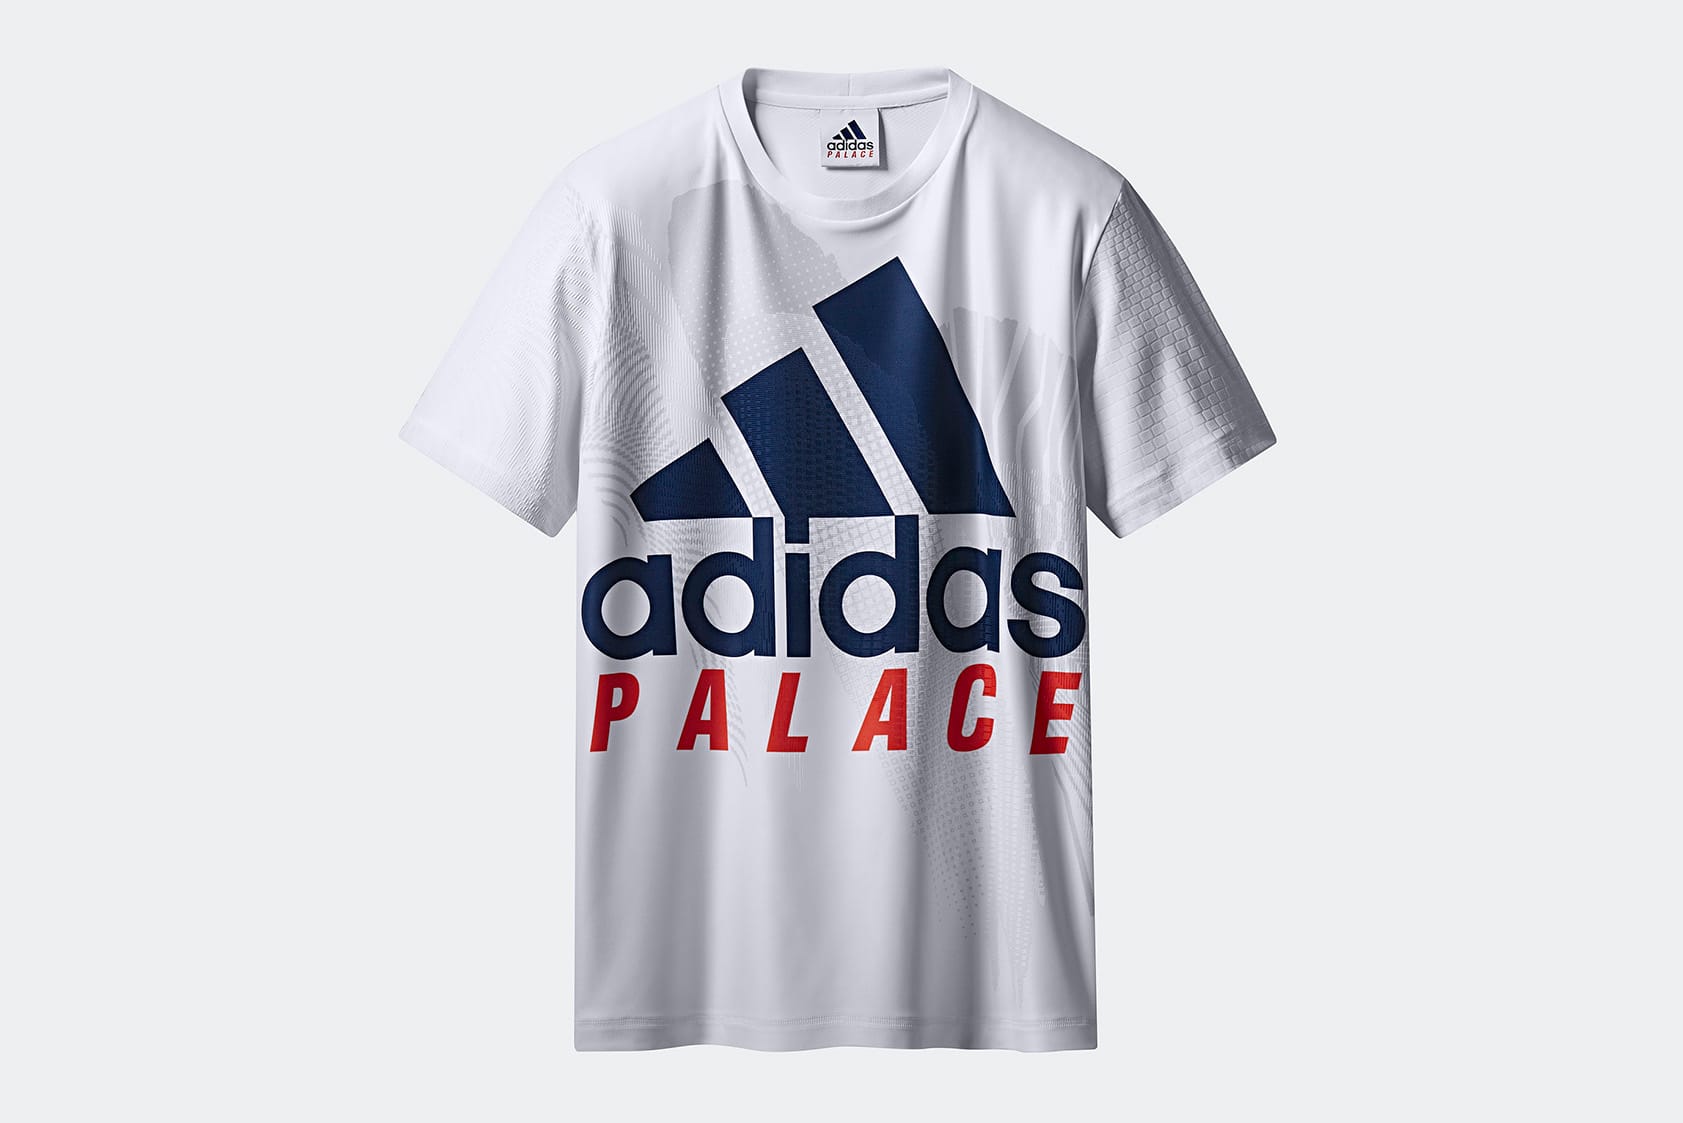 adidas x palace shirt